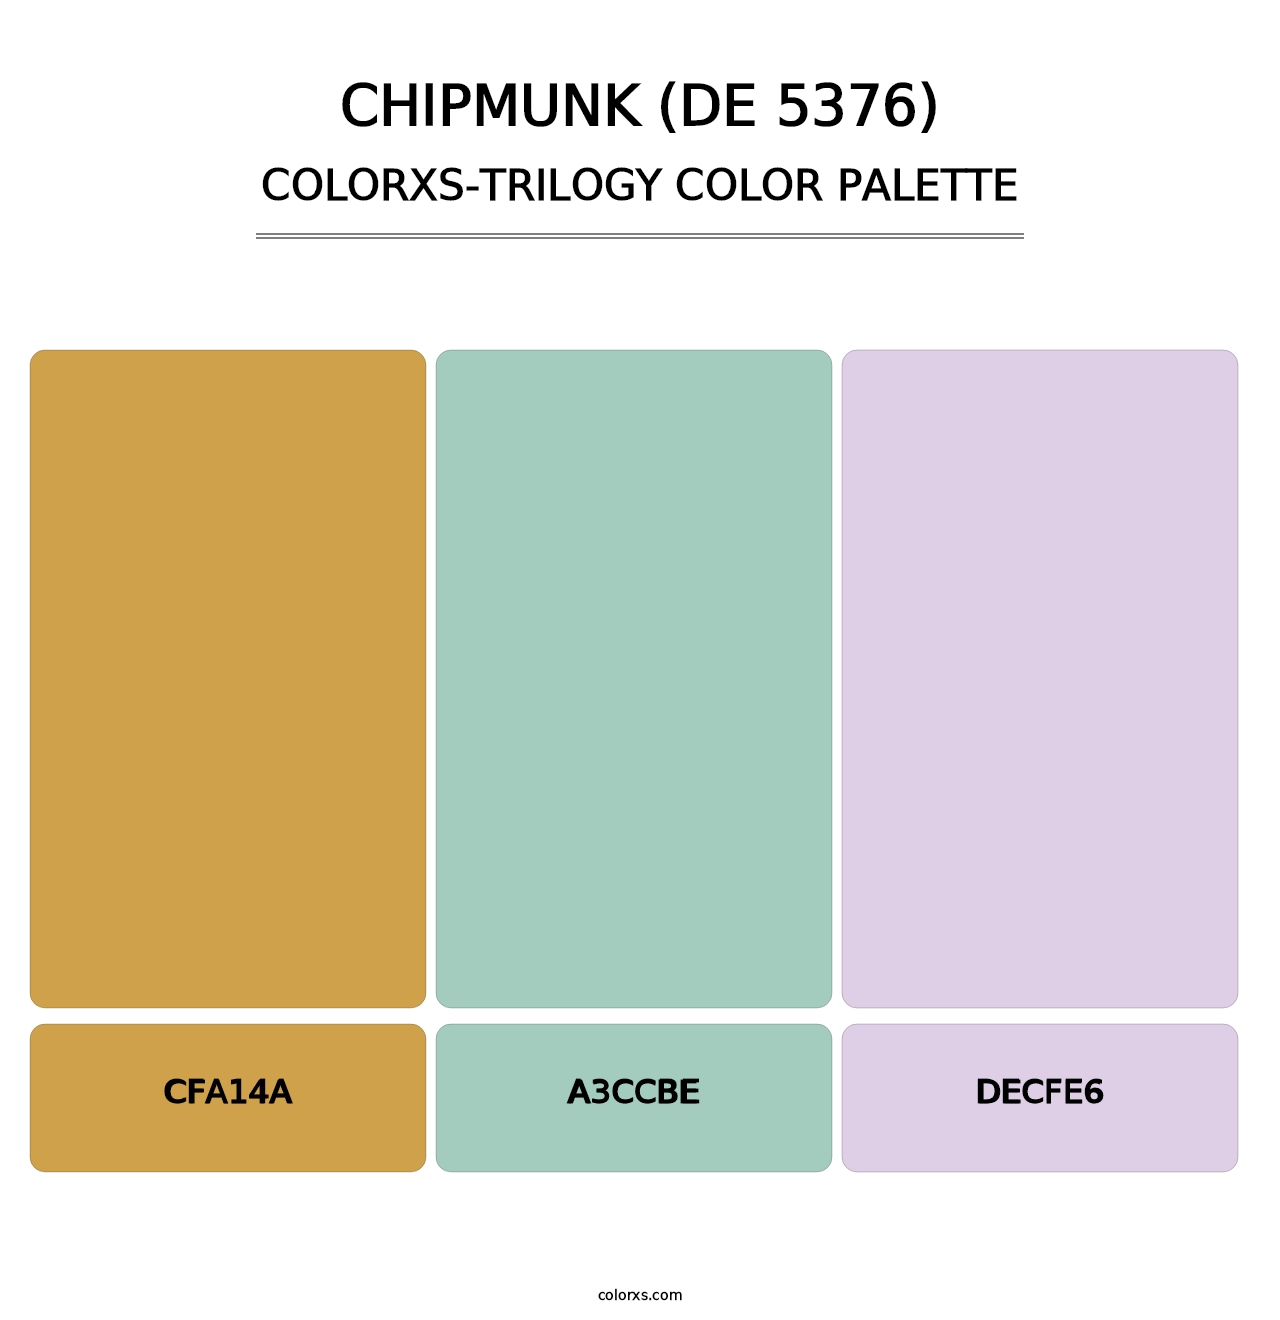 Chipmunk (DE 5376) - Colorxs Trilogy Palette